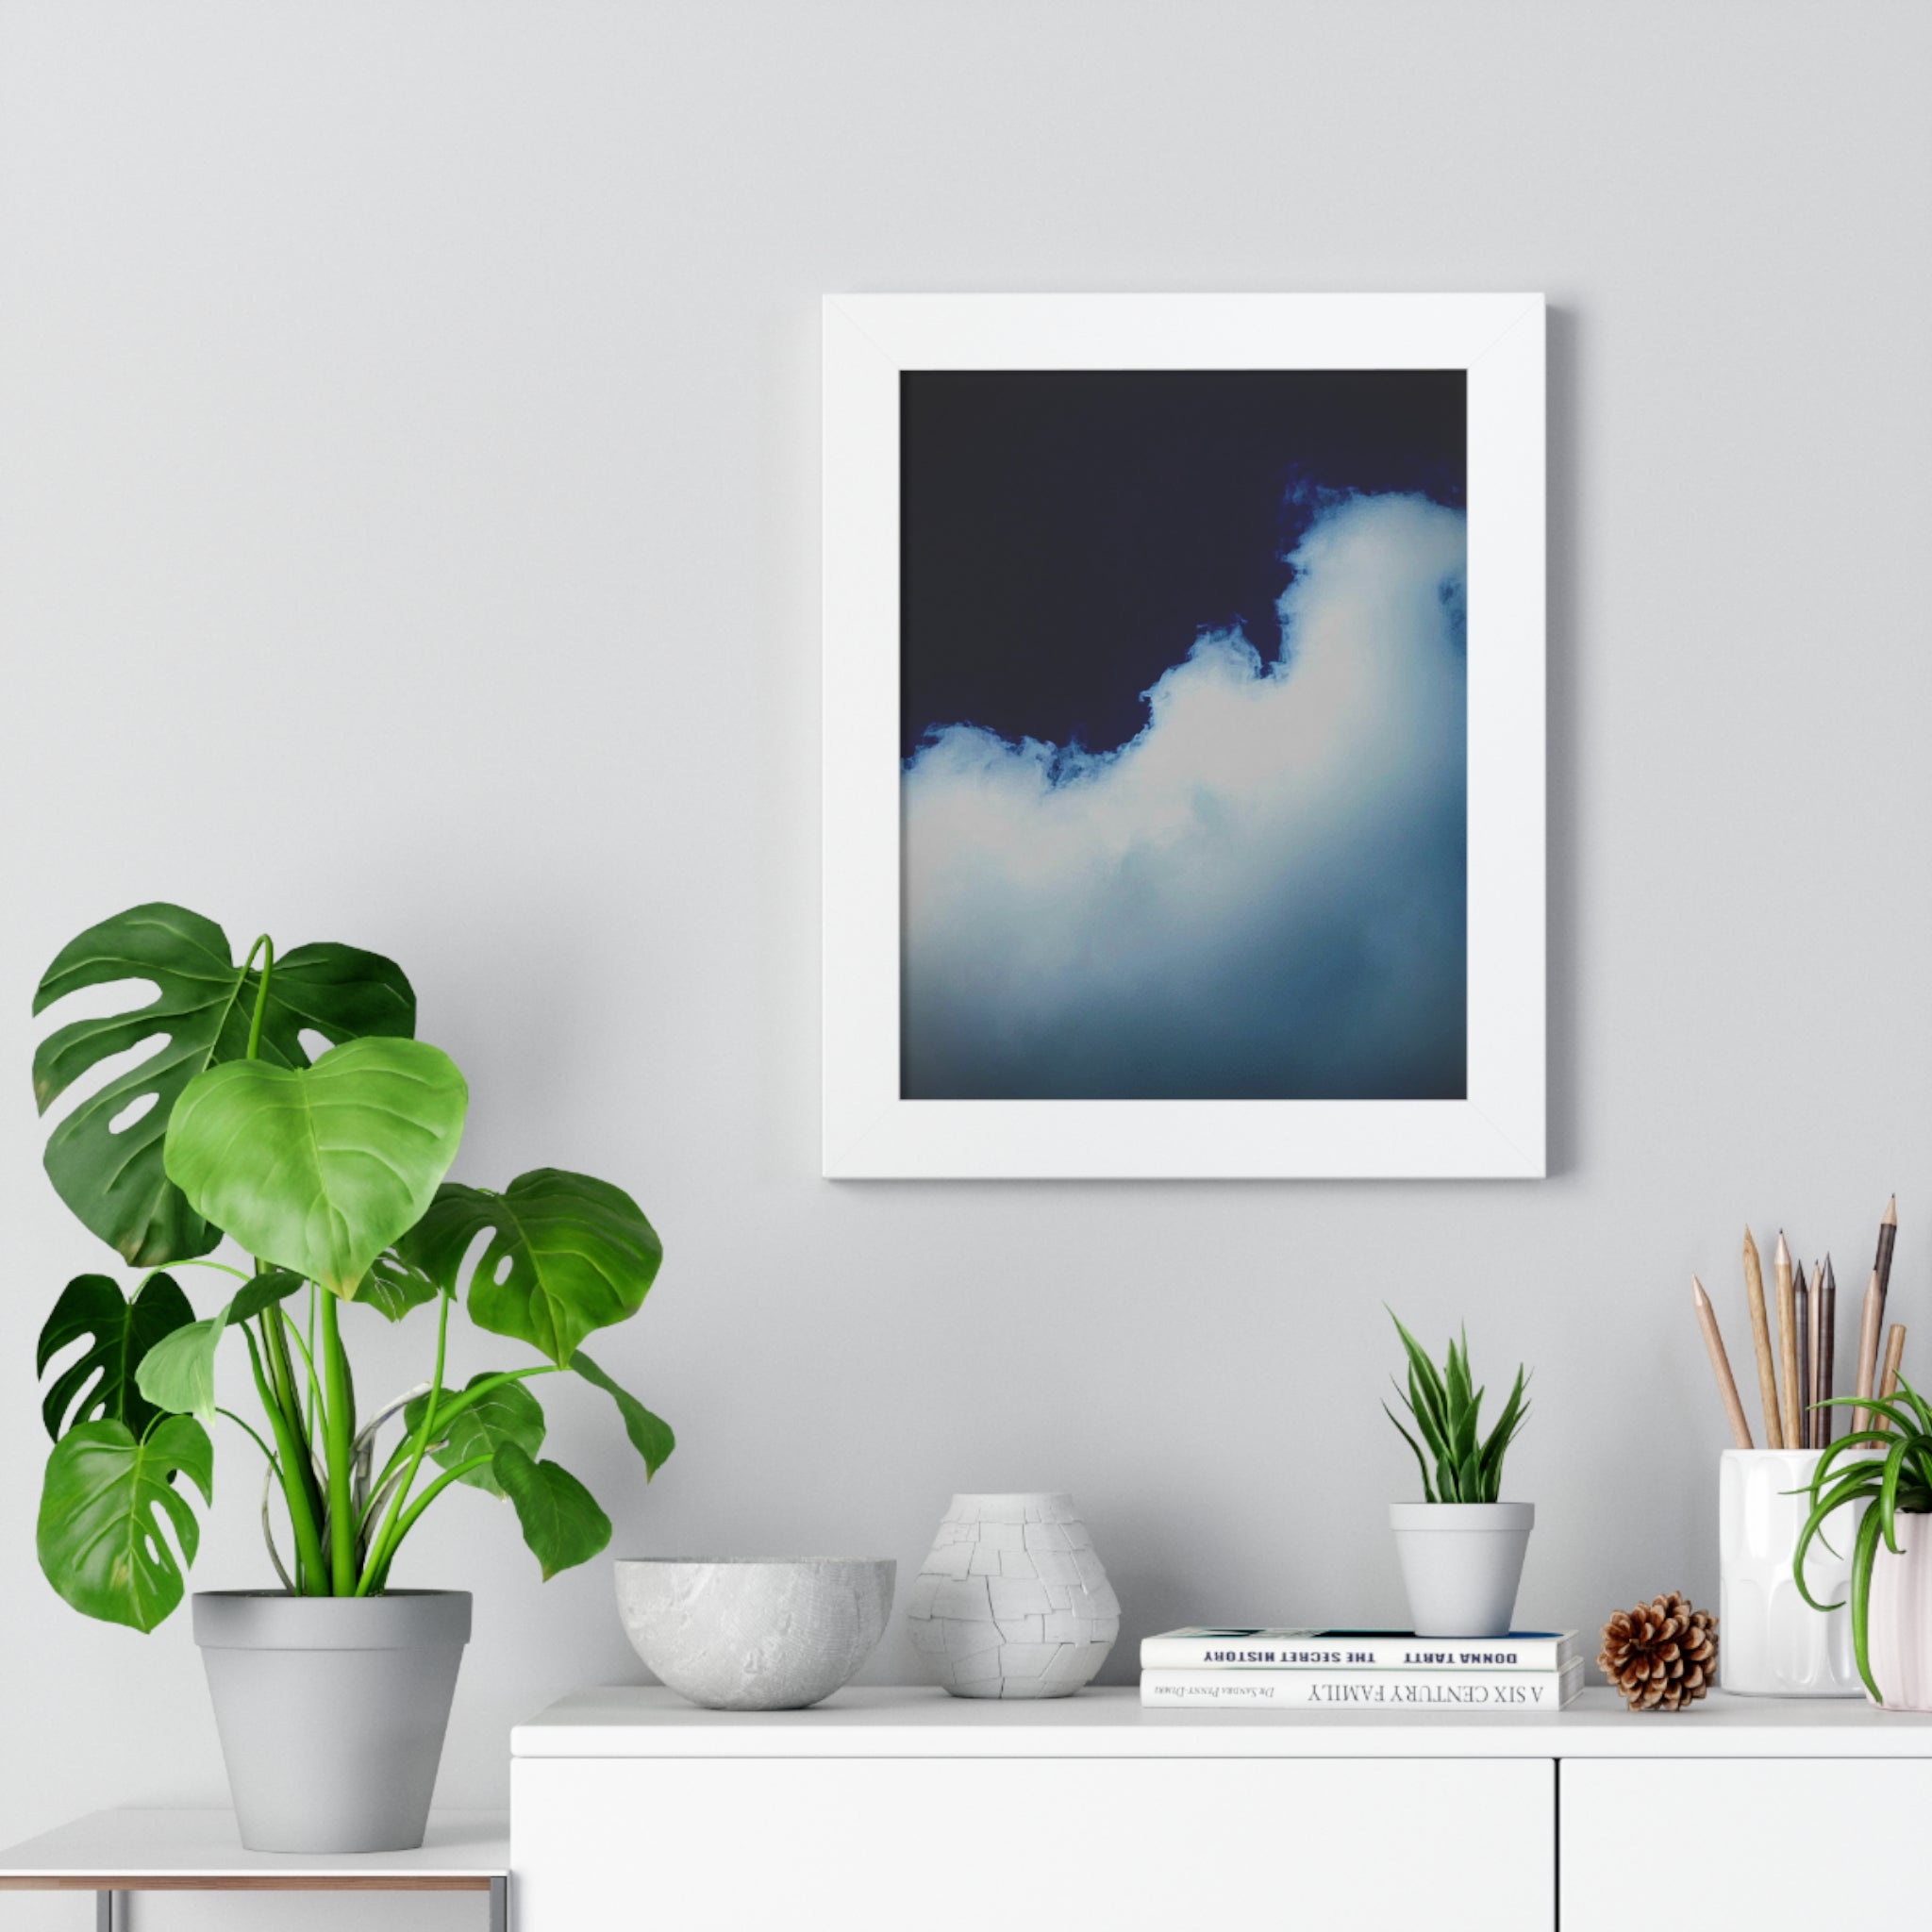 Framed 11" x 14" Vertical Poster of Cloud  by Jo Bird